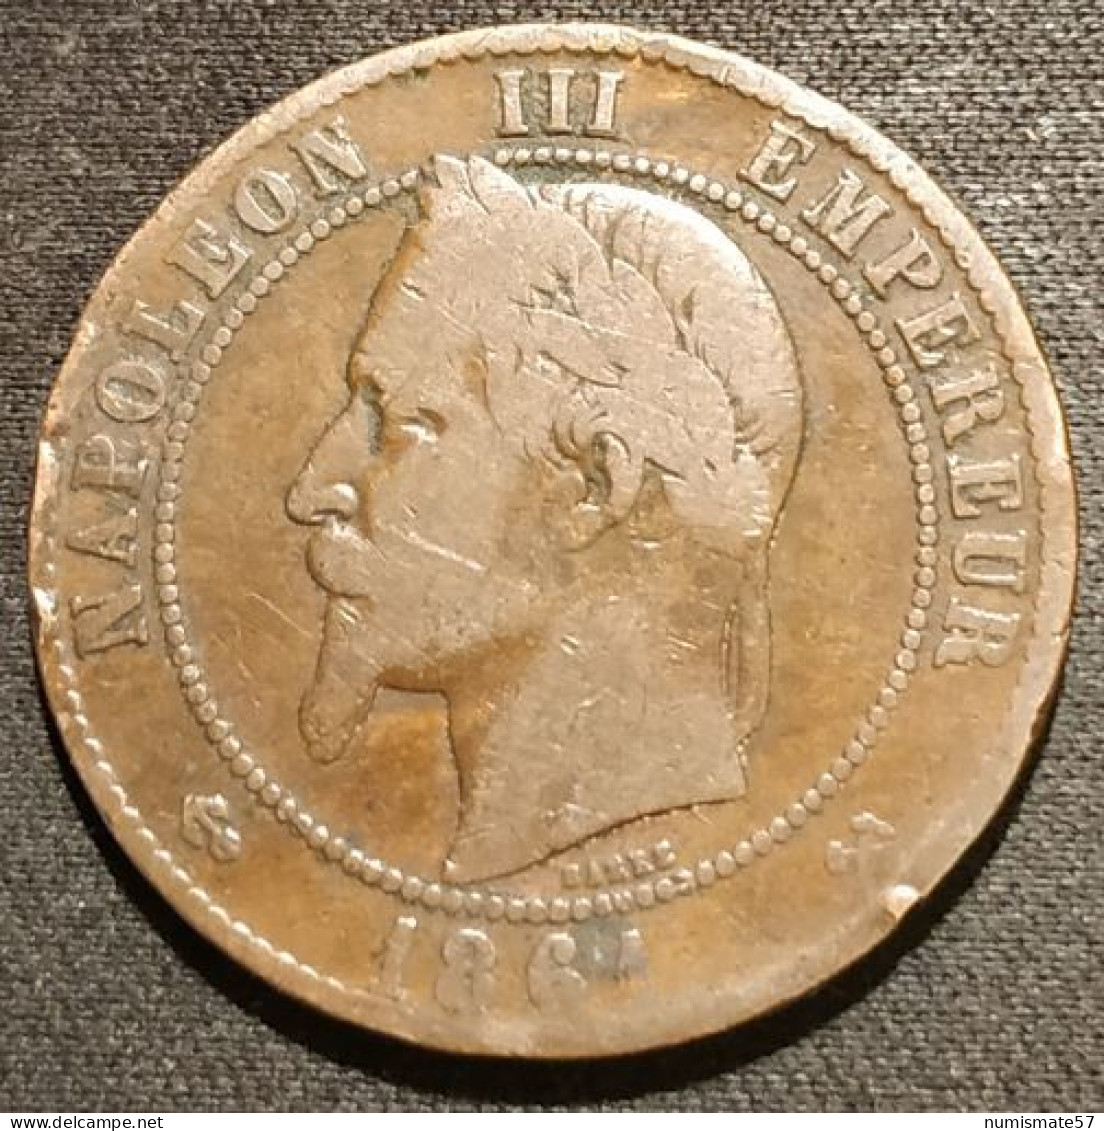 FRANCE - 10 CENTIMES 1861 K - Napoléon III - Tête Laurée - Gad 253 - KM 798.3 - 10 Centimes